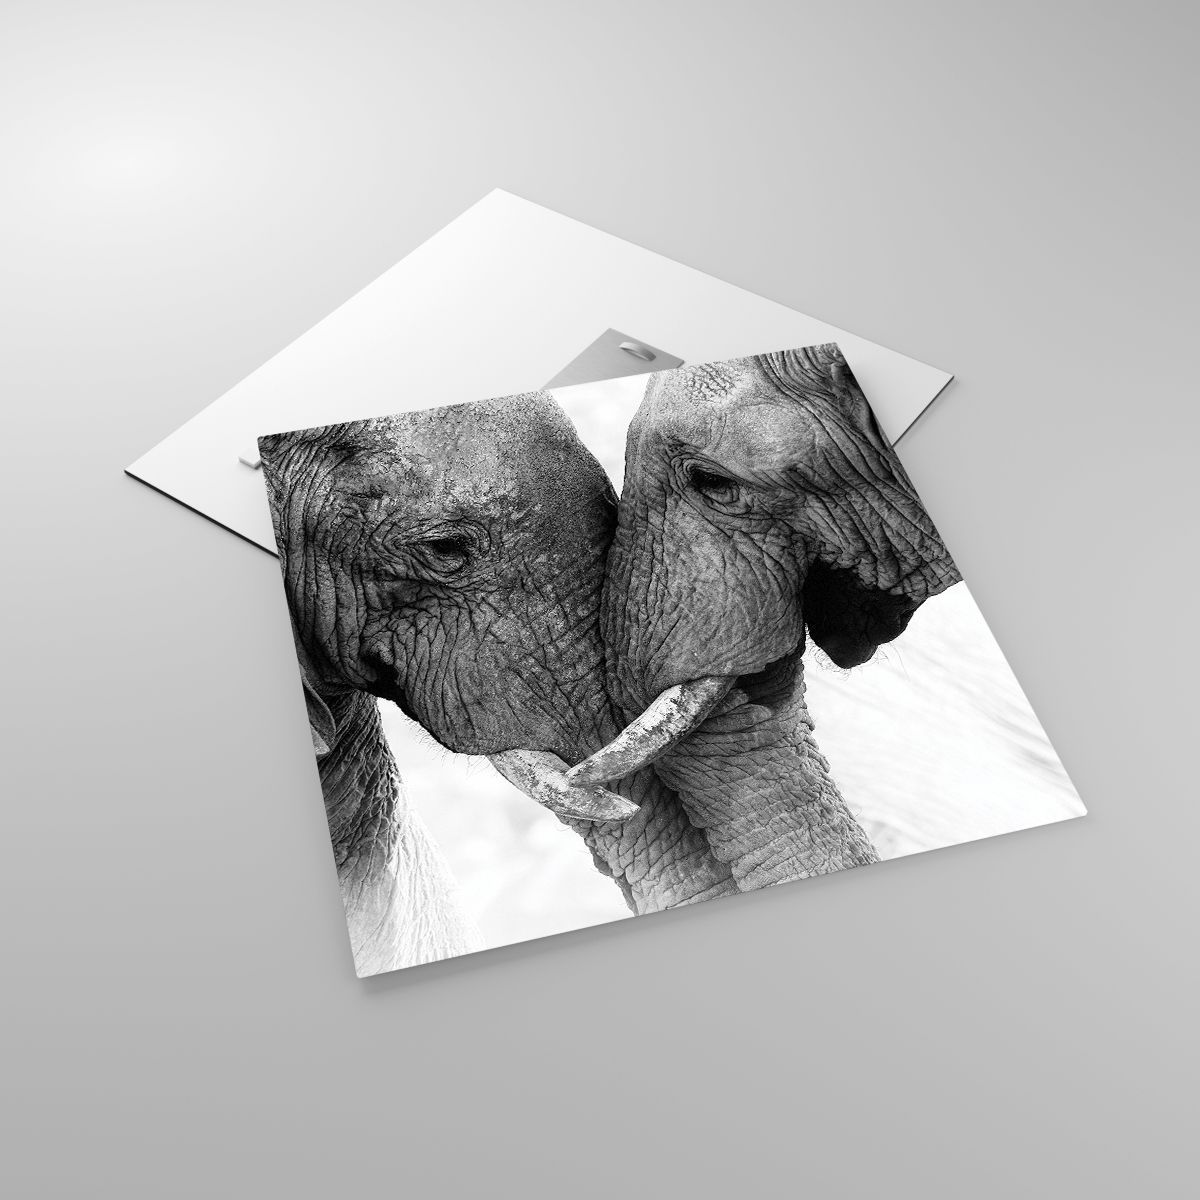 Glasbild Elefant, Glasbild Tiere, Glasbild Afrika, Glasbild Schwarz Und Weiß, Glasbild Liebe